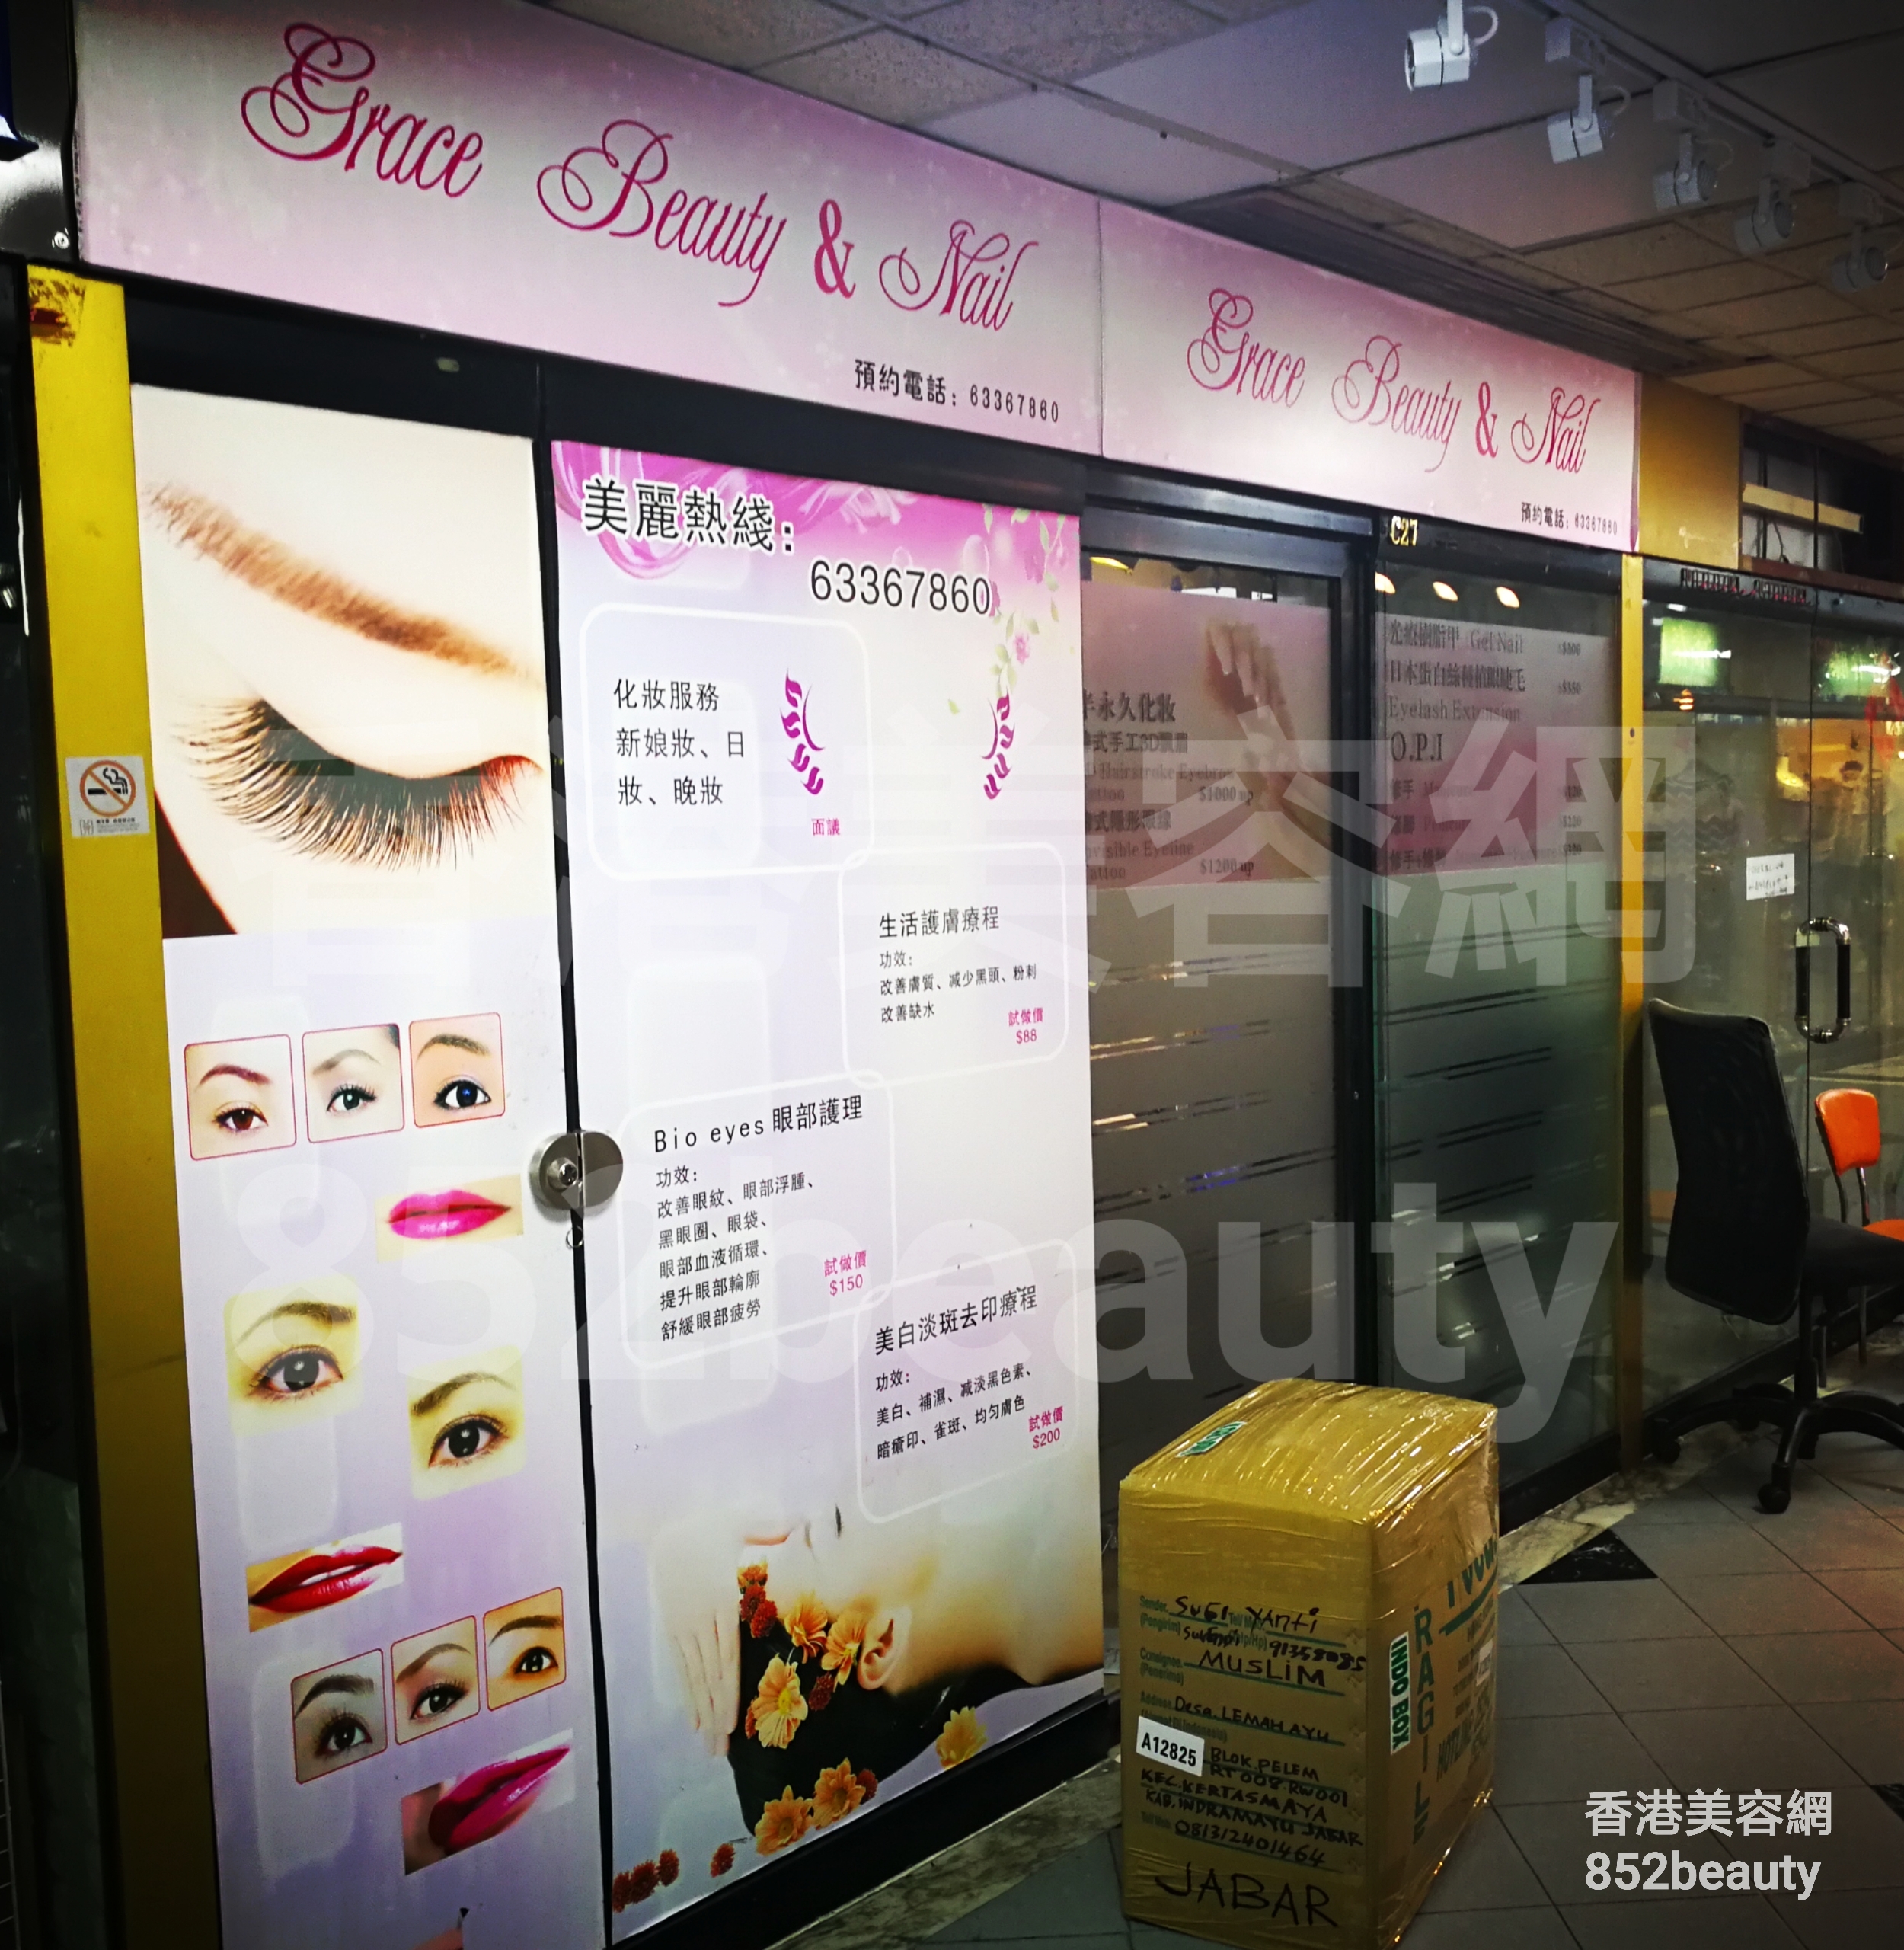 香港美容網 Hong Kong Beauty Salon 美容院 / 美容師: Grace Beauty & Nail